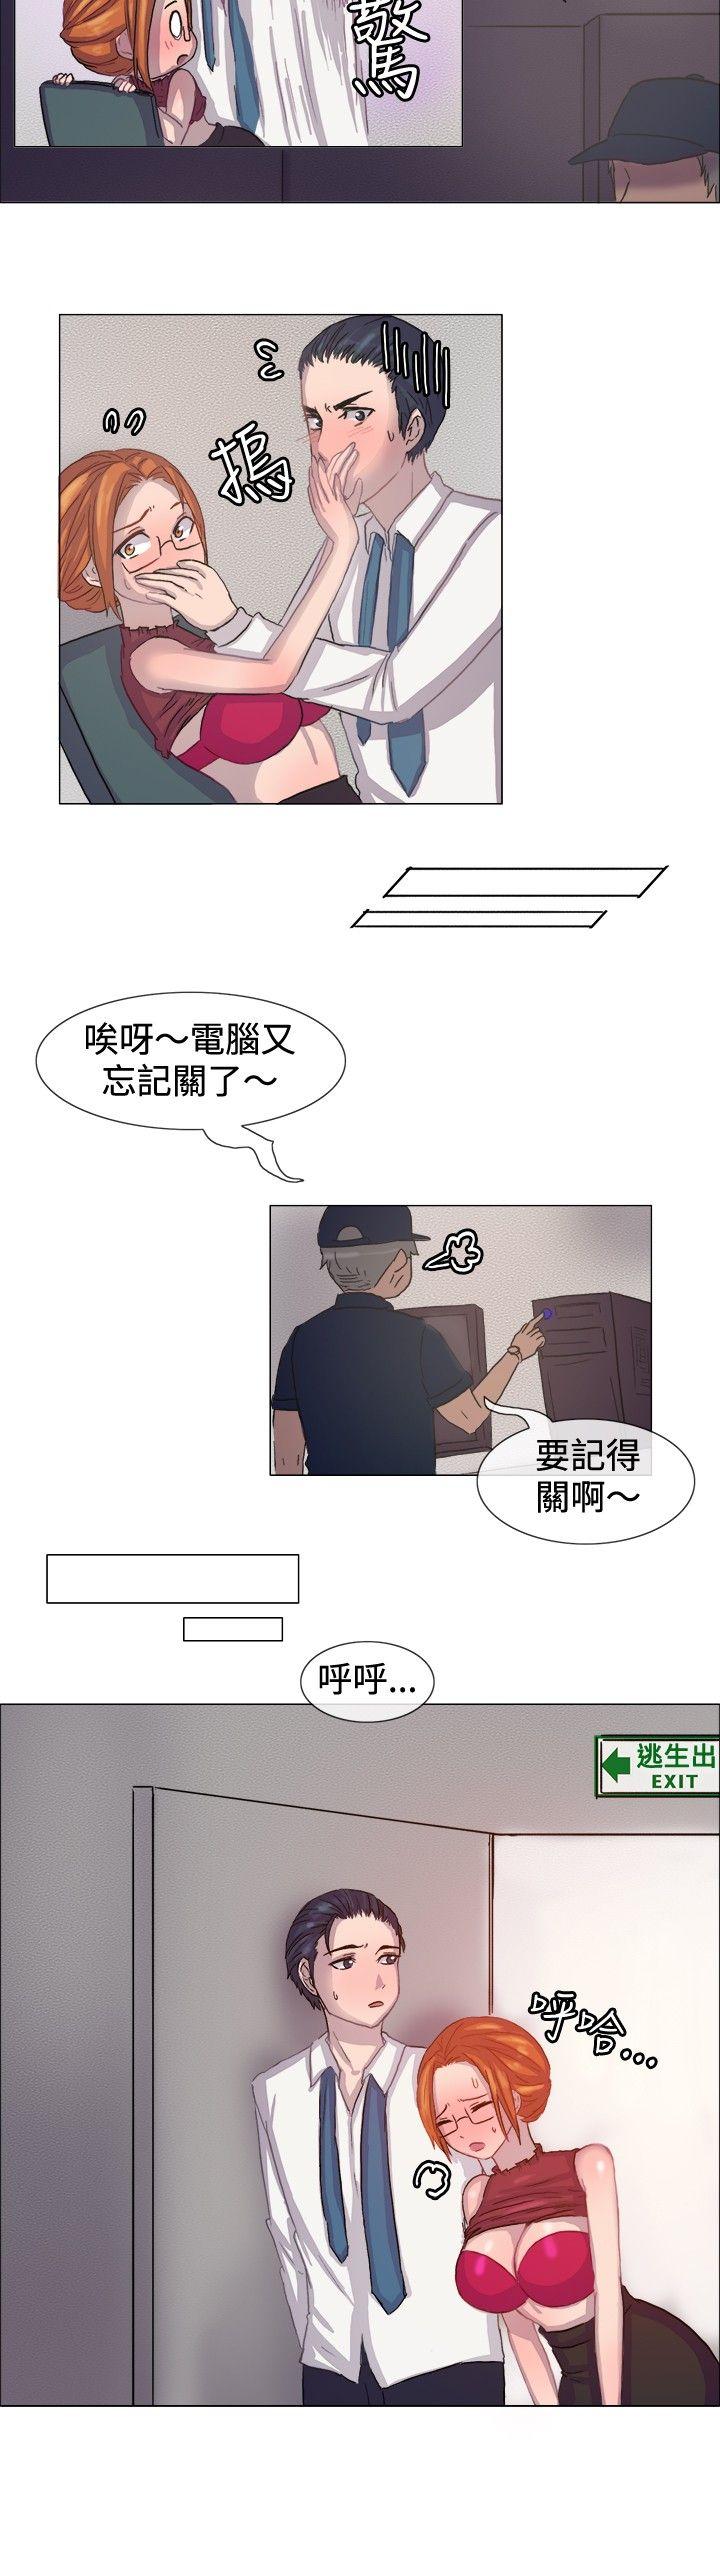 韩国污漫画 一起享用吧 第6话 5